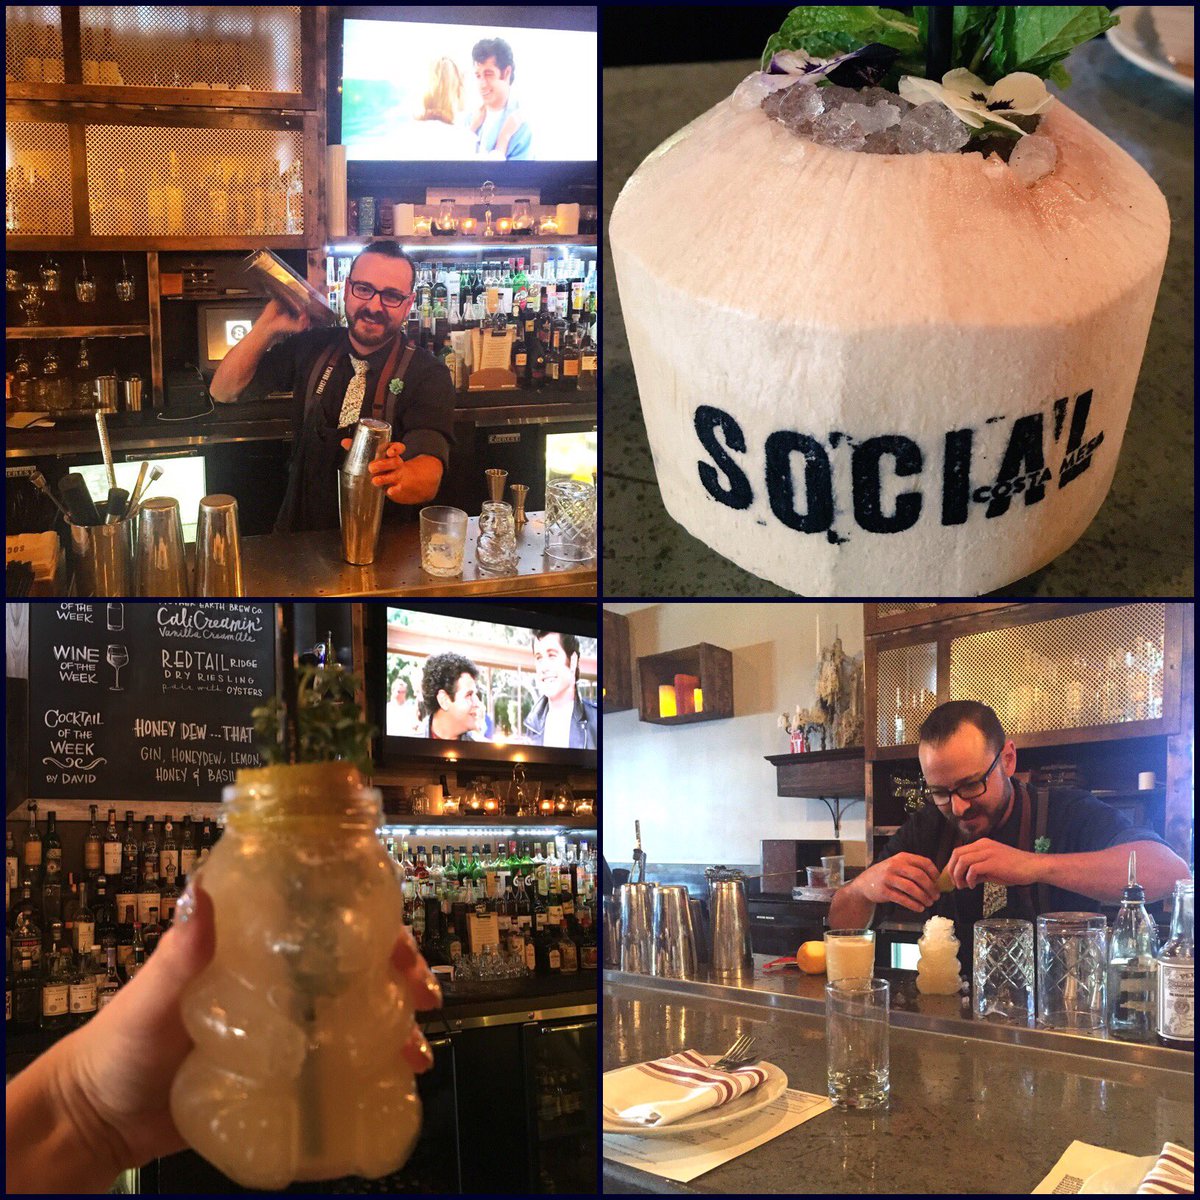 Vote @dvaliante 4 🍸Bartender of t/ Year @GoldenFoodie goldenfoodieawards.com #bartender #vote @socialcostamesa